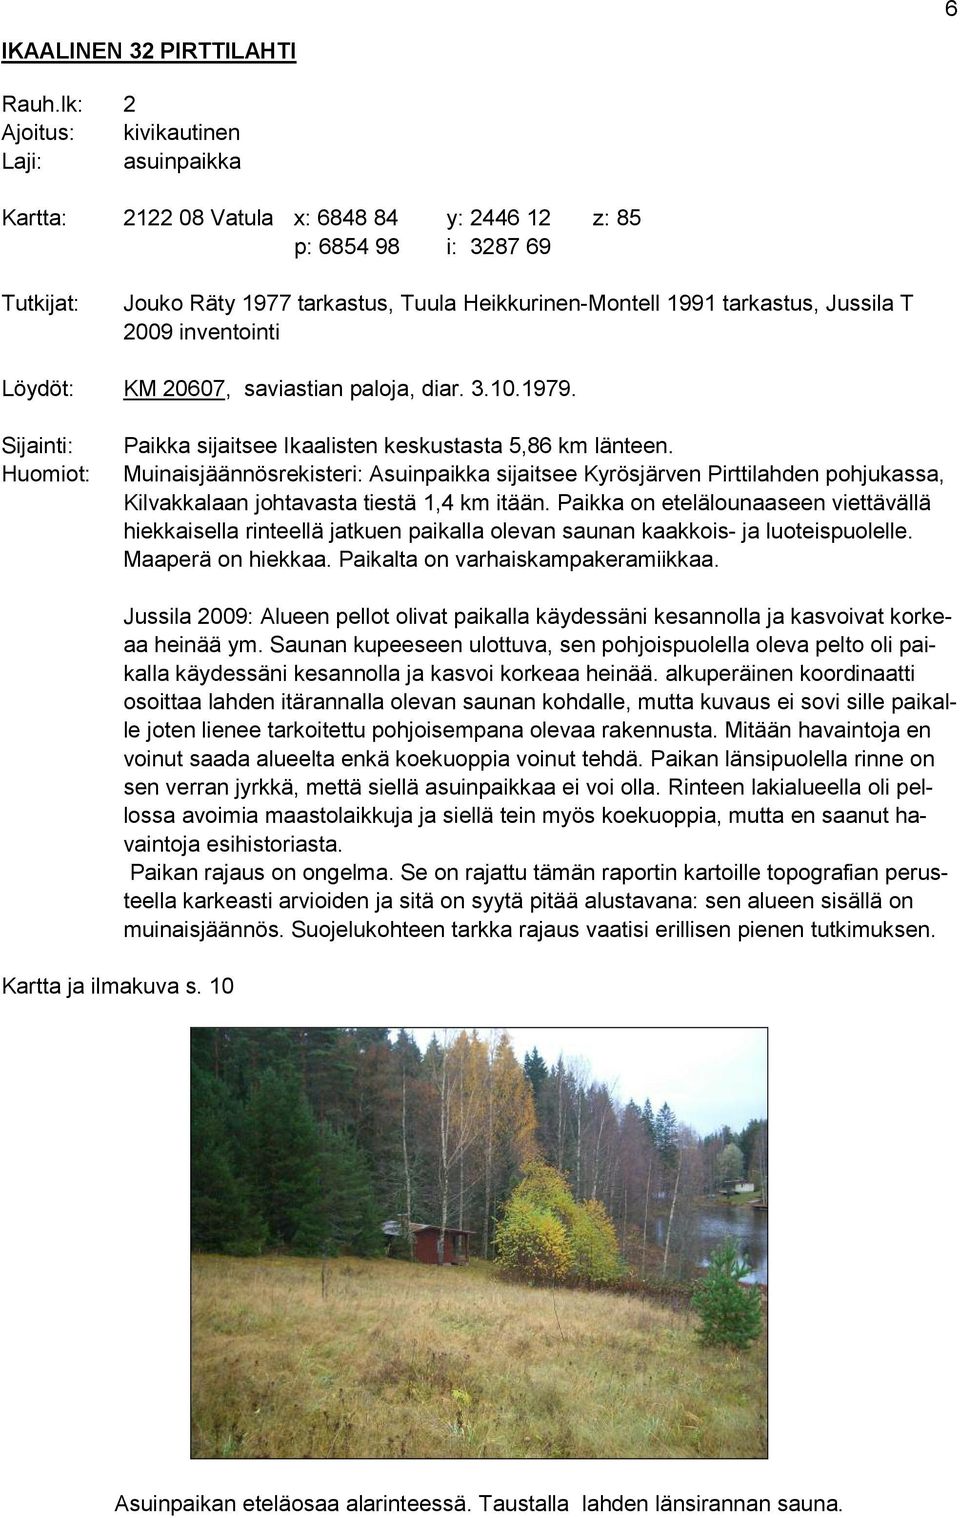 Jussila T 2009 inventointi Löydöt: KM 20607, saviastian paloja, diar. 3.10.1979. Sijainti: Huomiot: Paikka sijaitsee Ikaalisten keskustasta 5,86 km länteen.